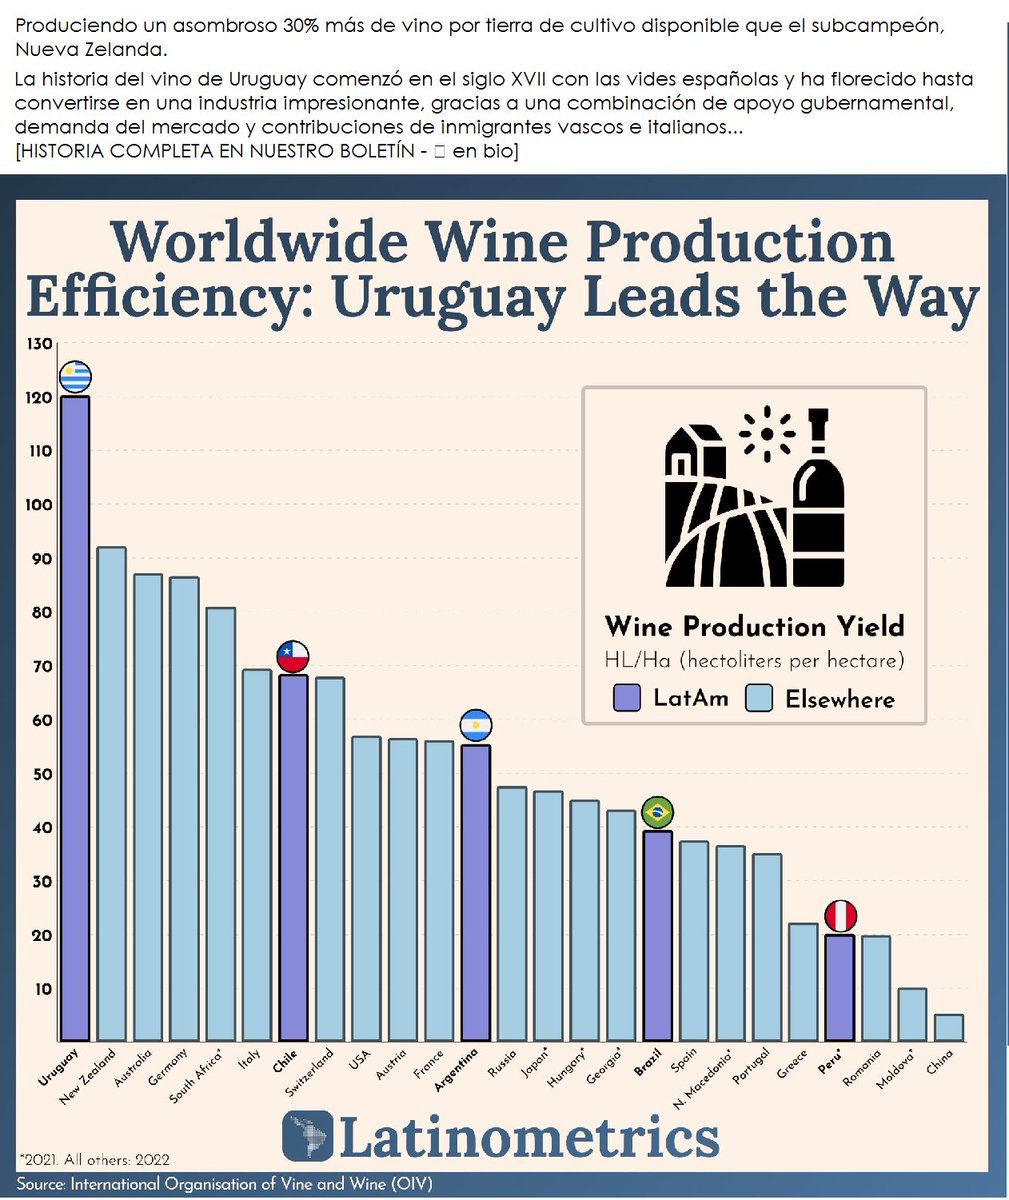 🇺🇾 ¿Alguna vez bebiste una copa de vino uruguayo? De lo contrario, es posible que desee agregarlo a su lista de deseos.
A pesar de ser el productor de vino más pequeño de América Latina, ¡Uruguay sorprendentemente lidera el mundo en eficiencia de producción de vino! 
📊@LatamData